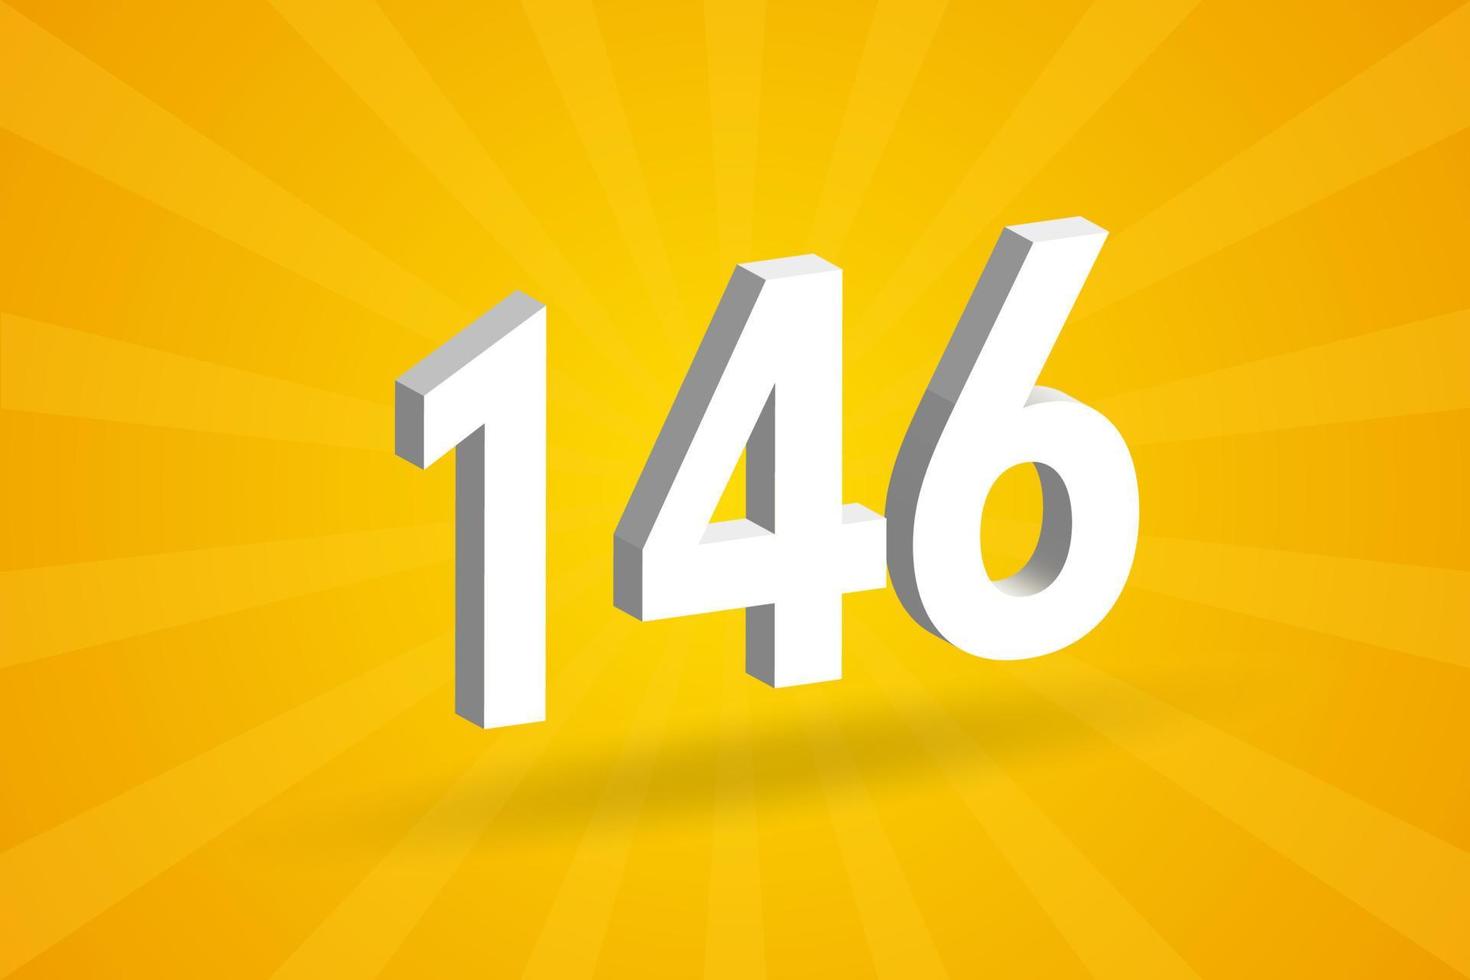 3d 146 Zahlenschriftalphabet. weiße 3D-Nummer 146 mit gelbem Hintergrund vektor